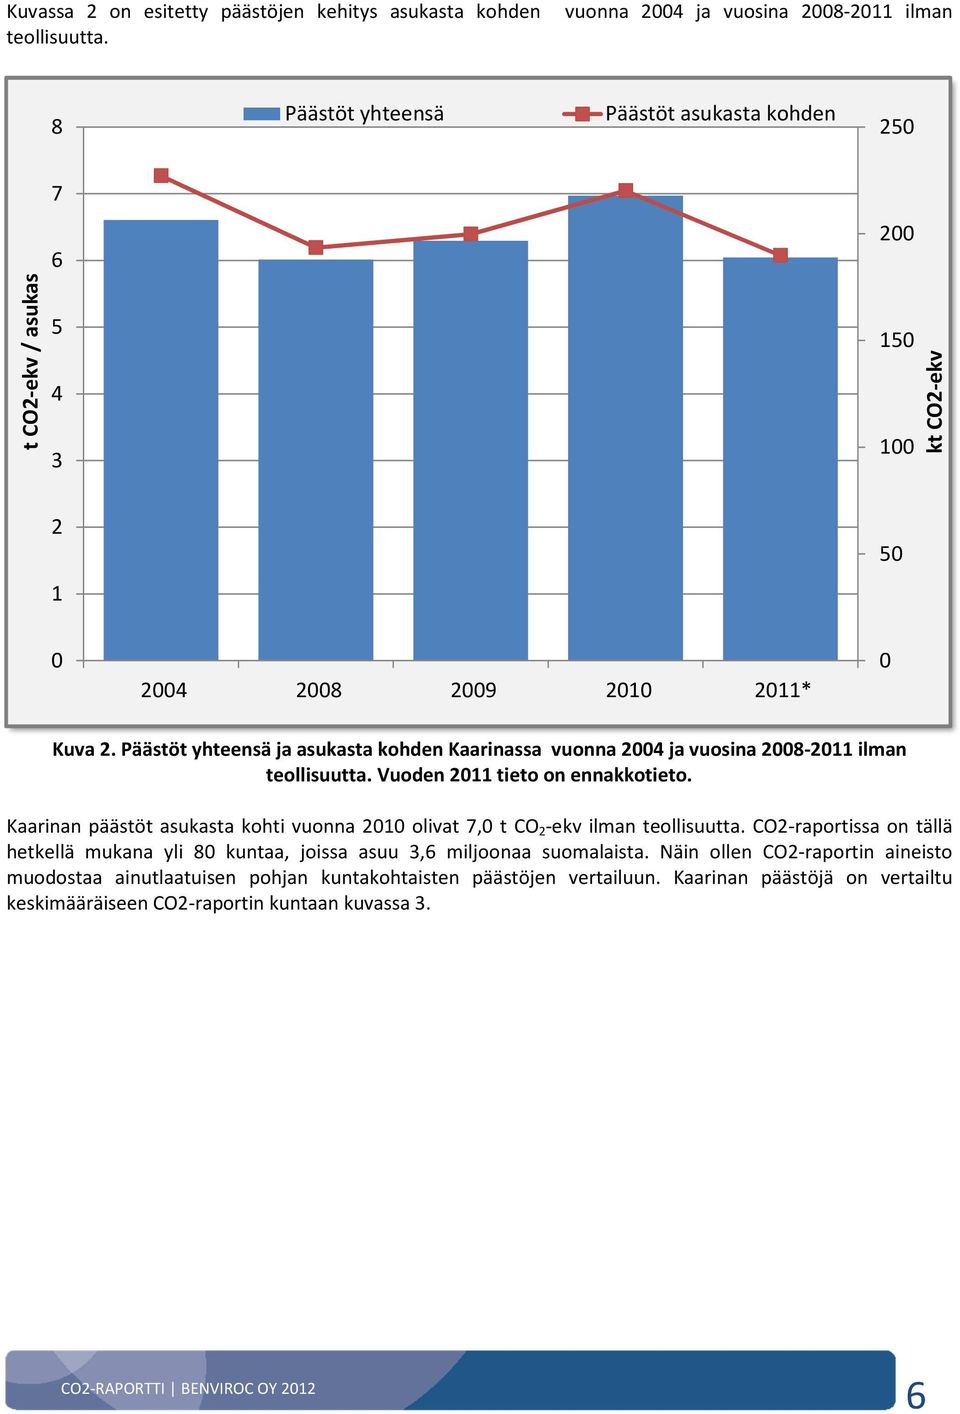 Päästöt yhteensä ja asukasta kohden Kaarinassa vuonna 2004 ja vuosina 2008-2011 ilman teollisuutta. Vuoden 2011 tieto on ennakkotieto.